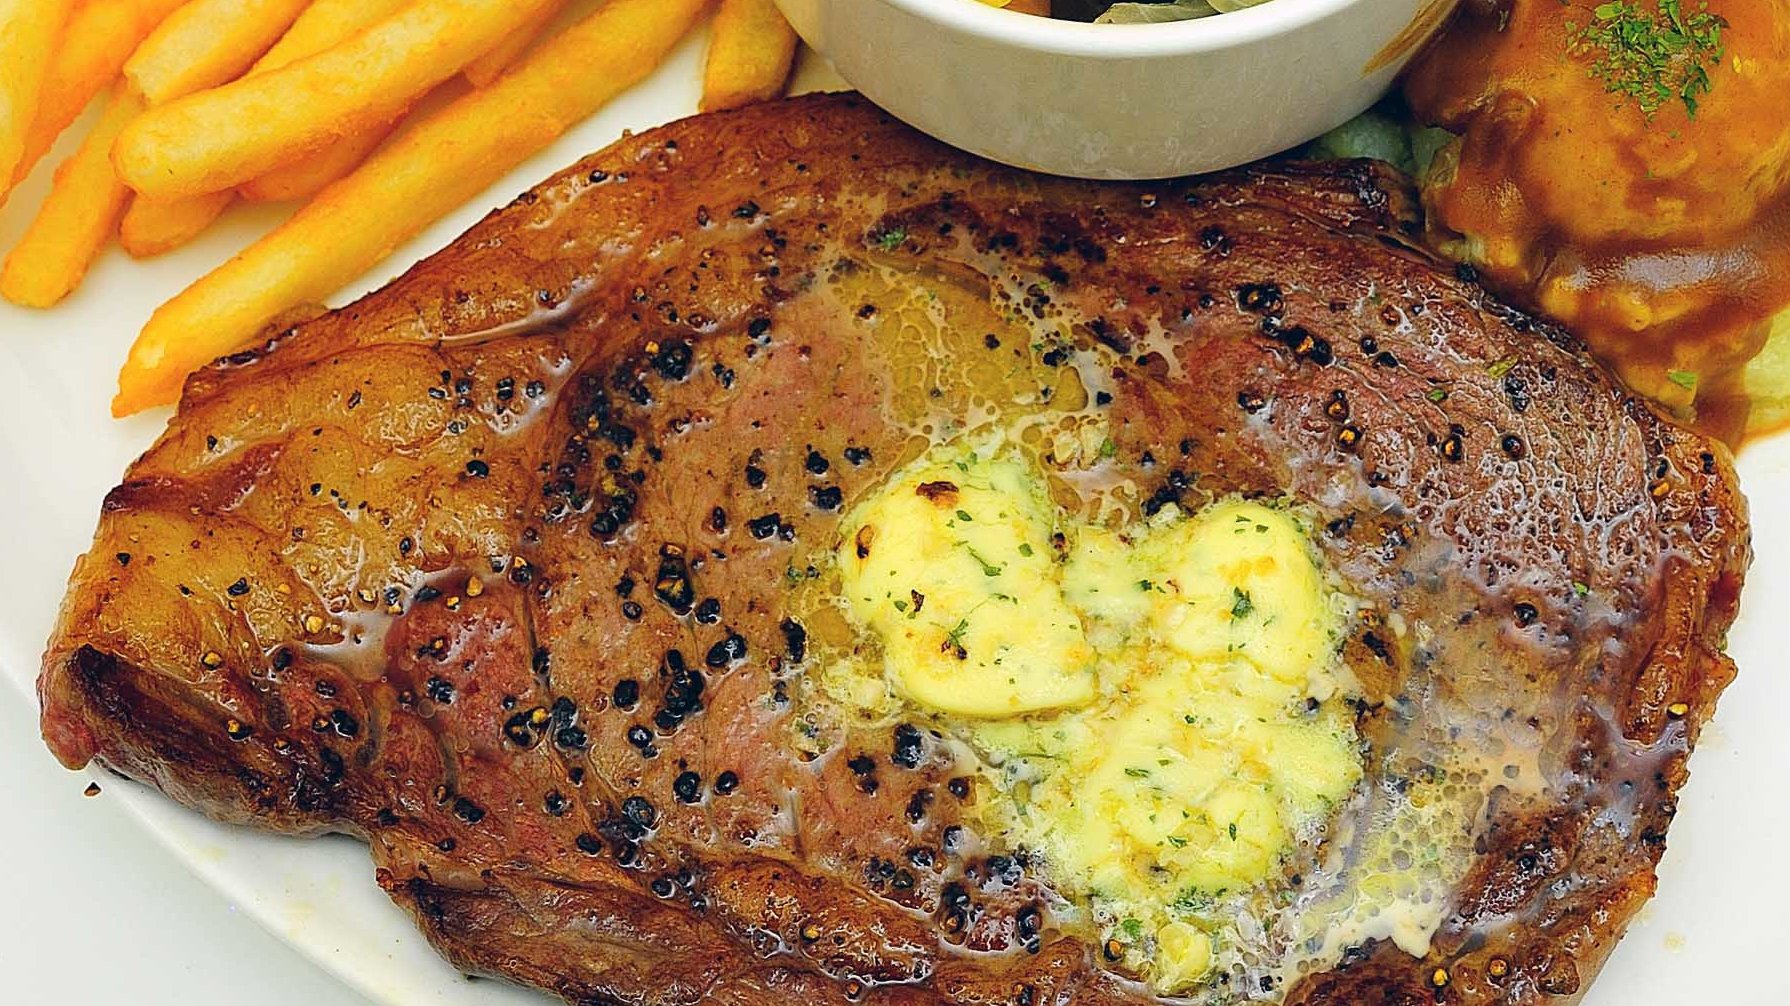 Steak Essen in Kempten im Allgäu - Teller gefüllt mit frischem Rinder-Steak, Kräuterbutter, gebratenen Kartoffeln und Salat